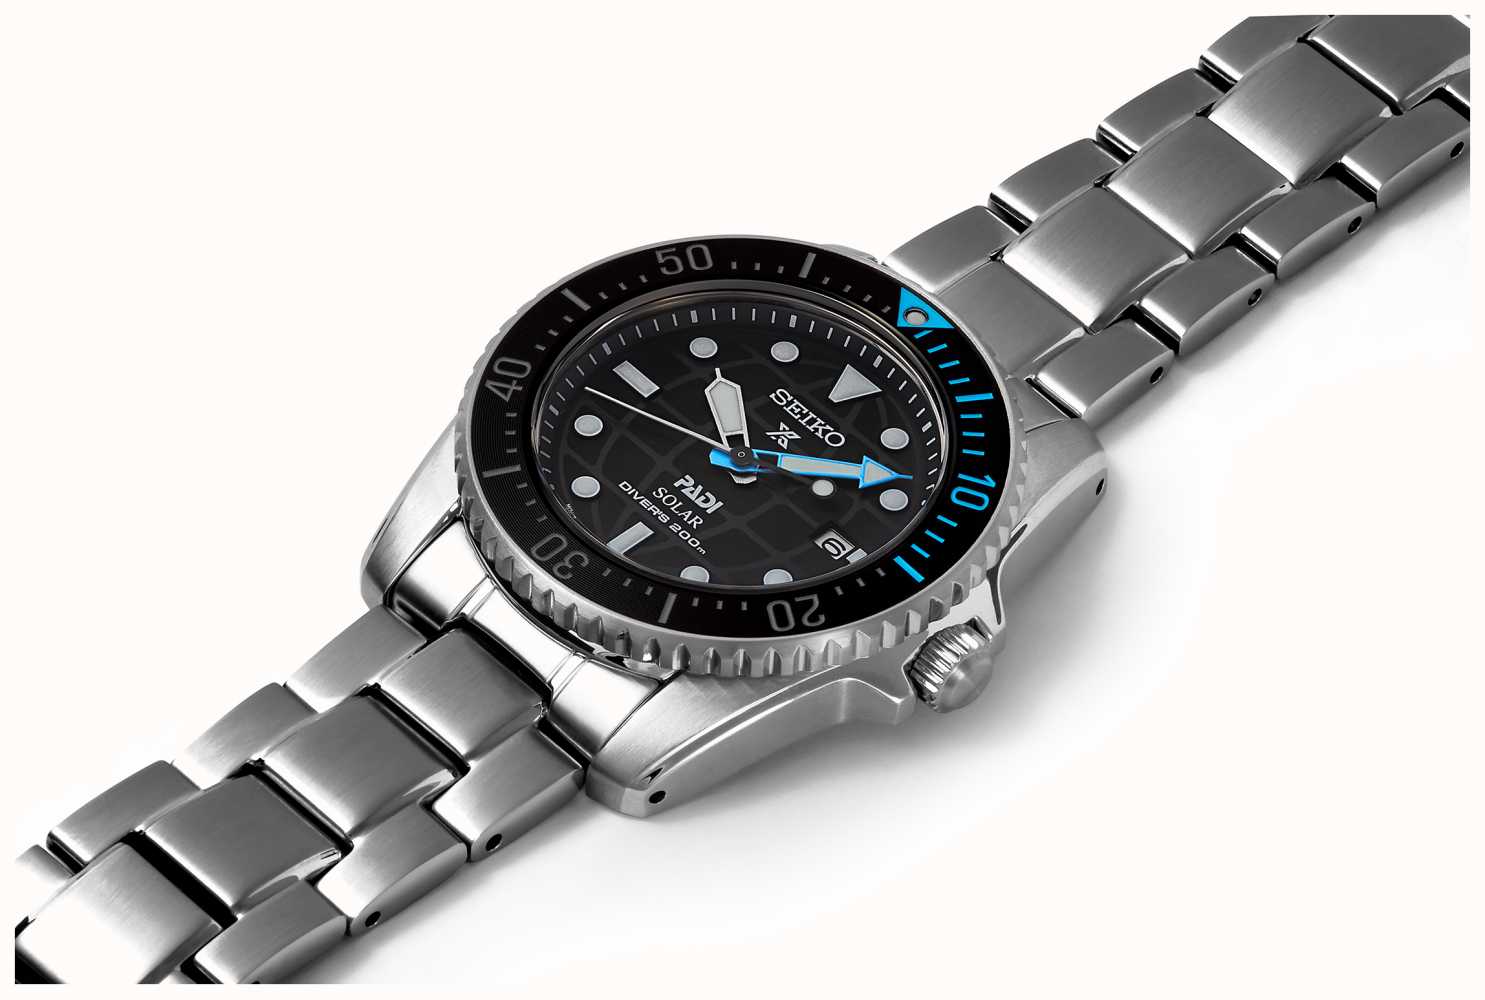 Seiko Prospex PADI Compact  Solar Scuba Diver SNE575P1 - First Class  Watches™ IRL